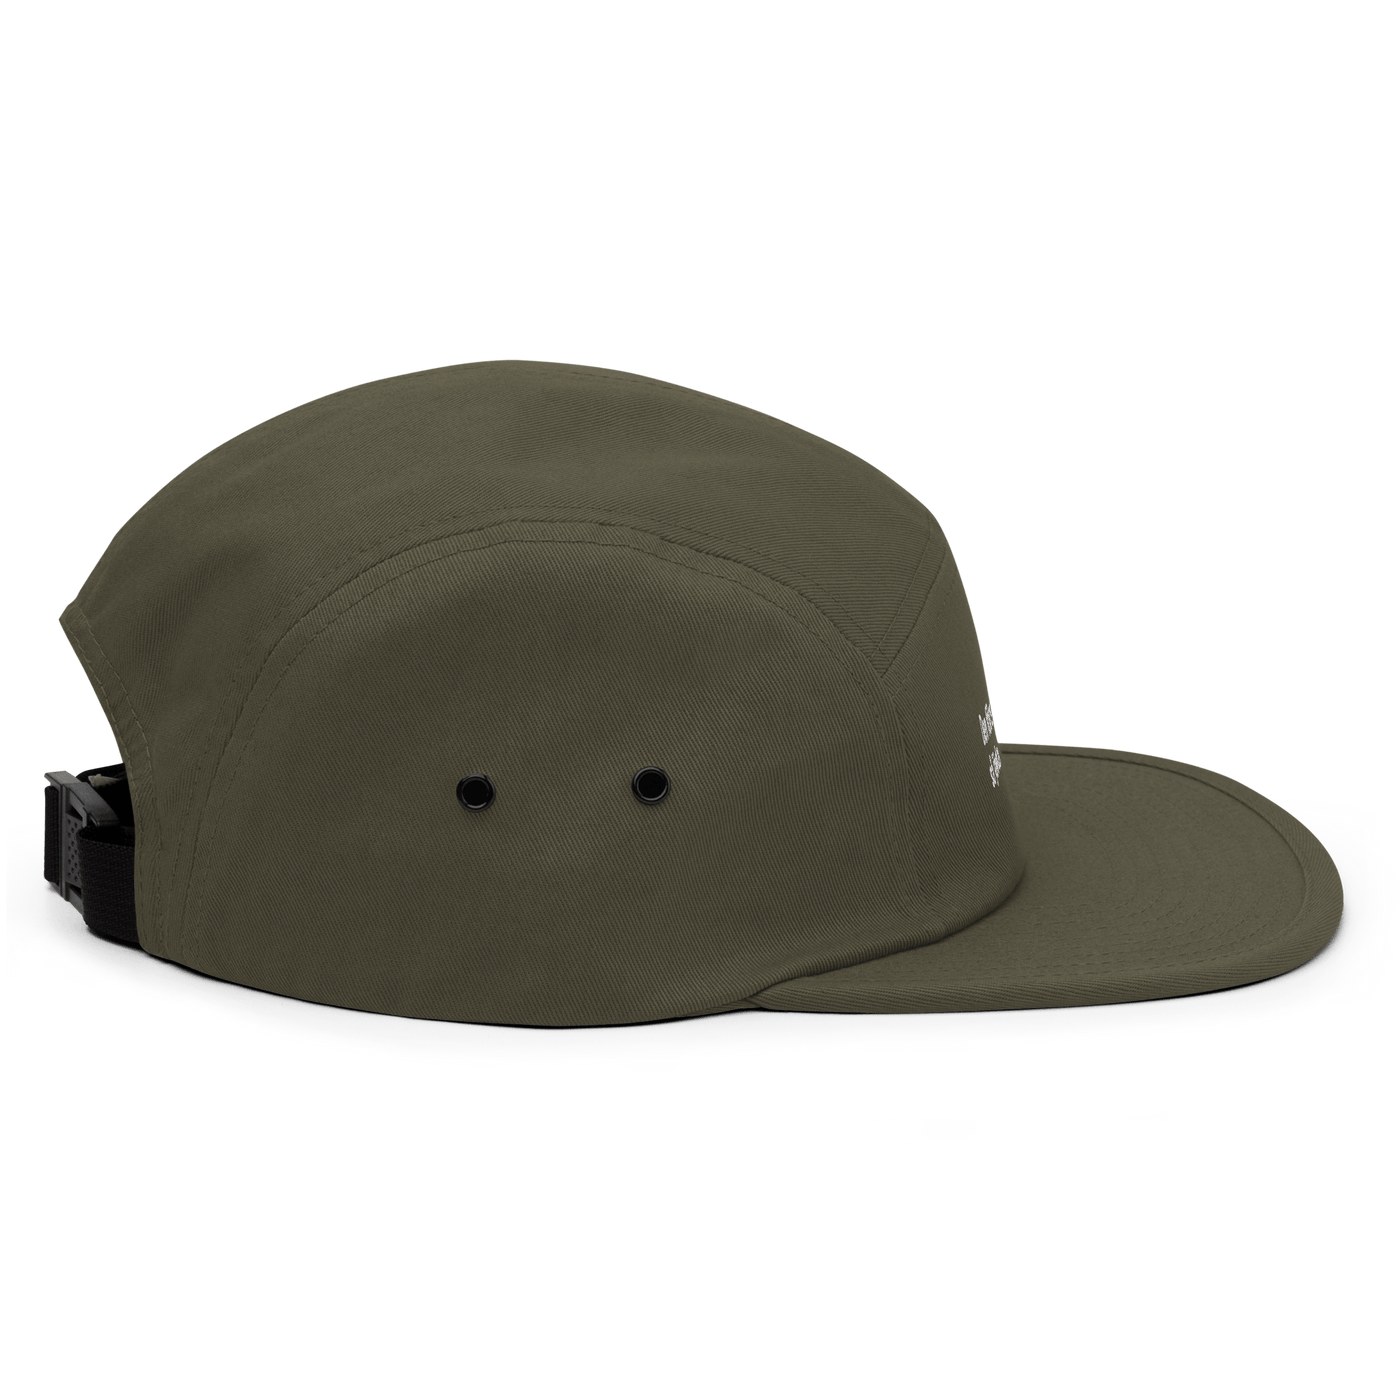 Den första Five Panel Hat - Olive - - Just Another Cap Store